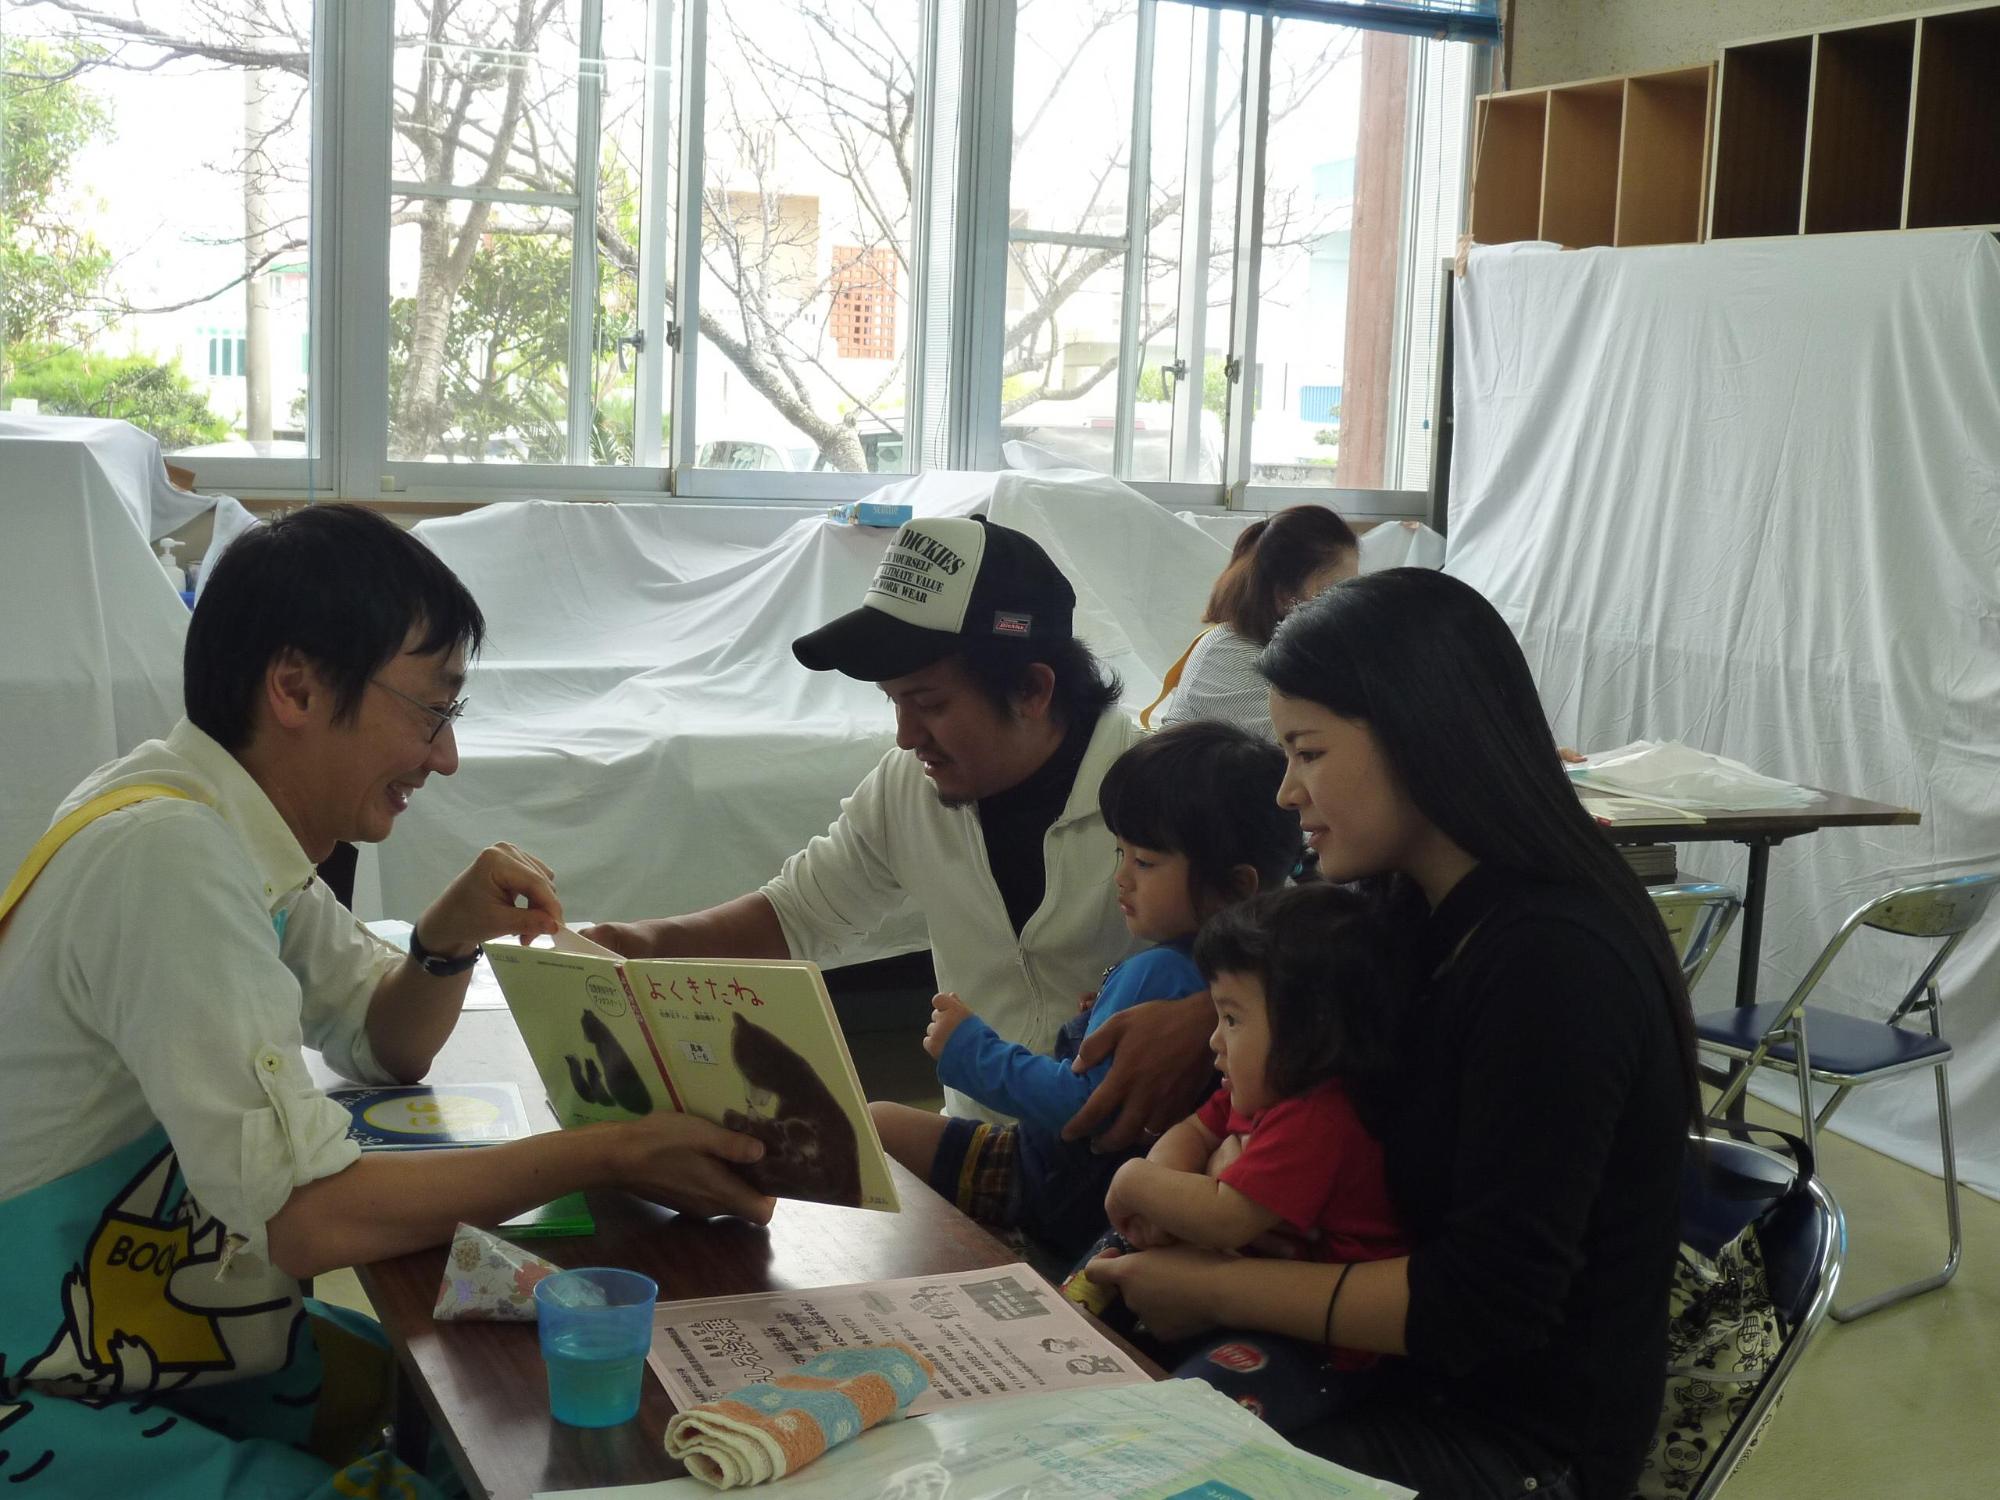 ボランティアの方が赤ちゃんに絵本の読み聞かせを行っている様子の写真